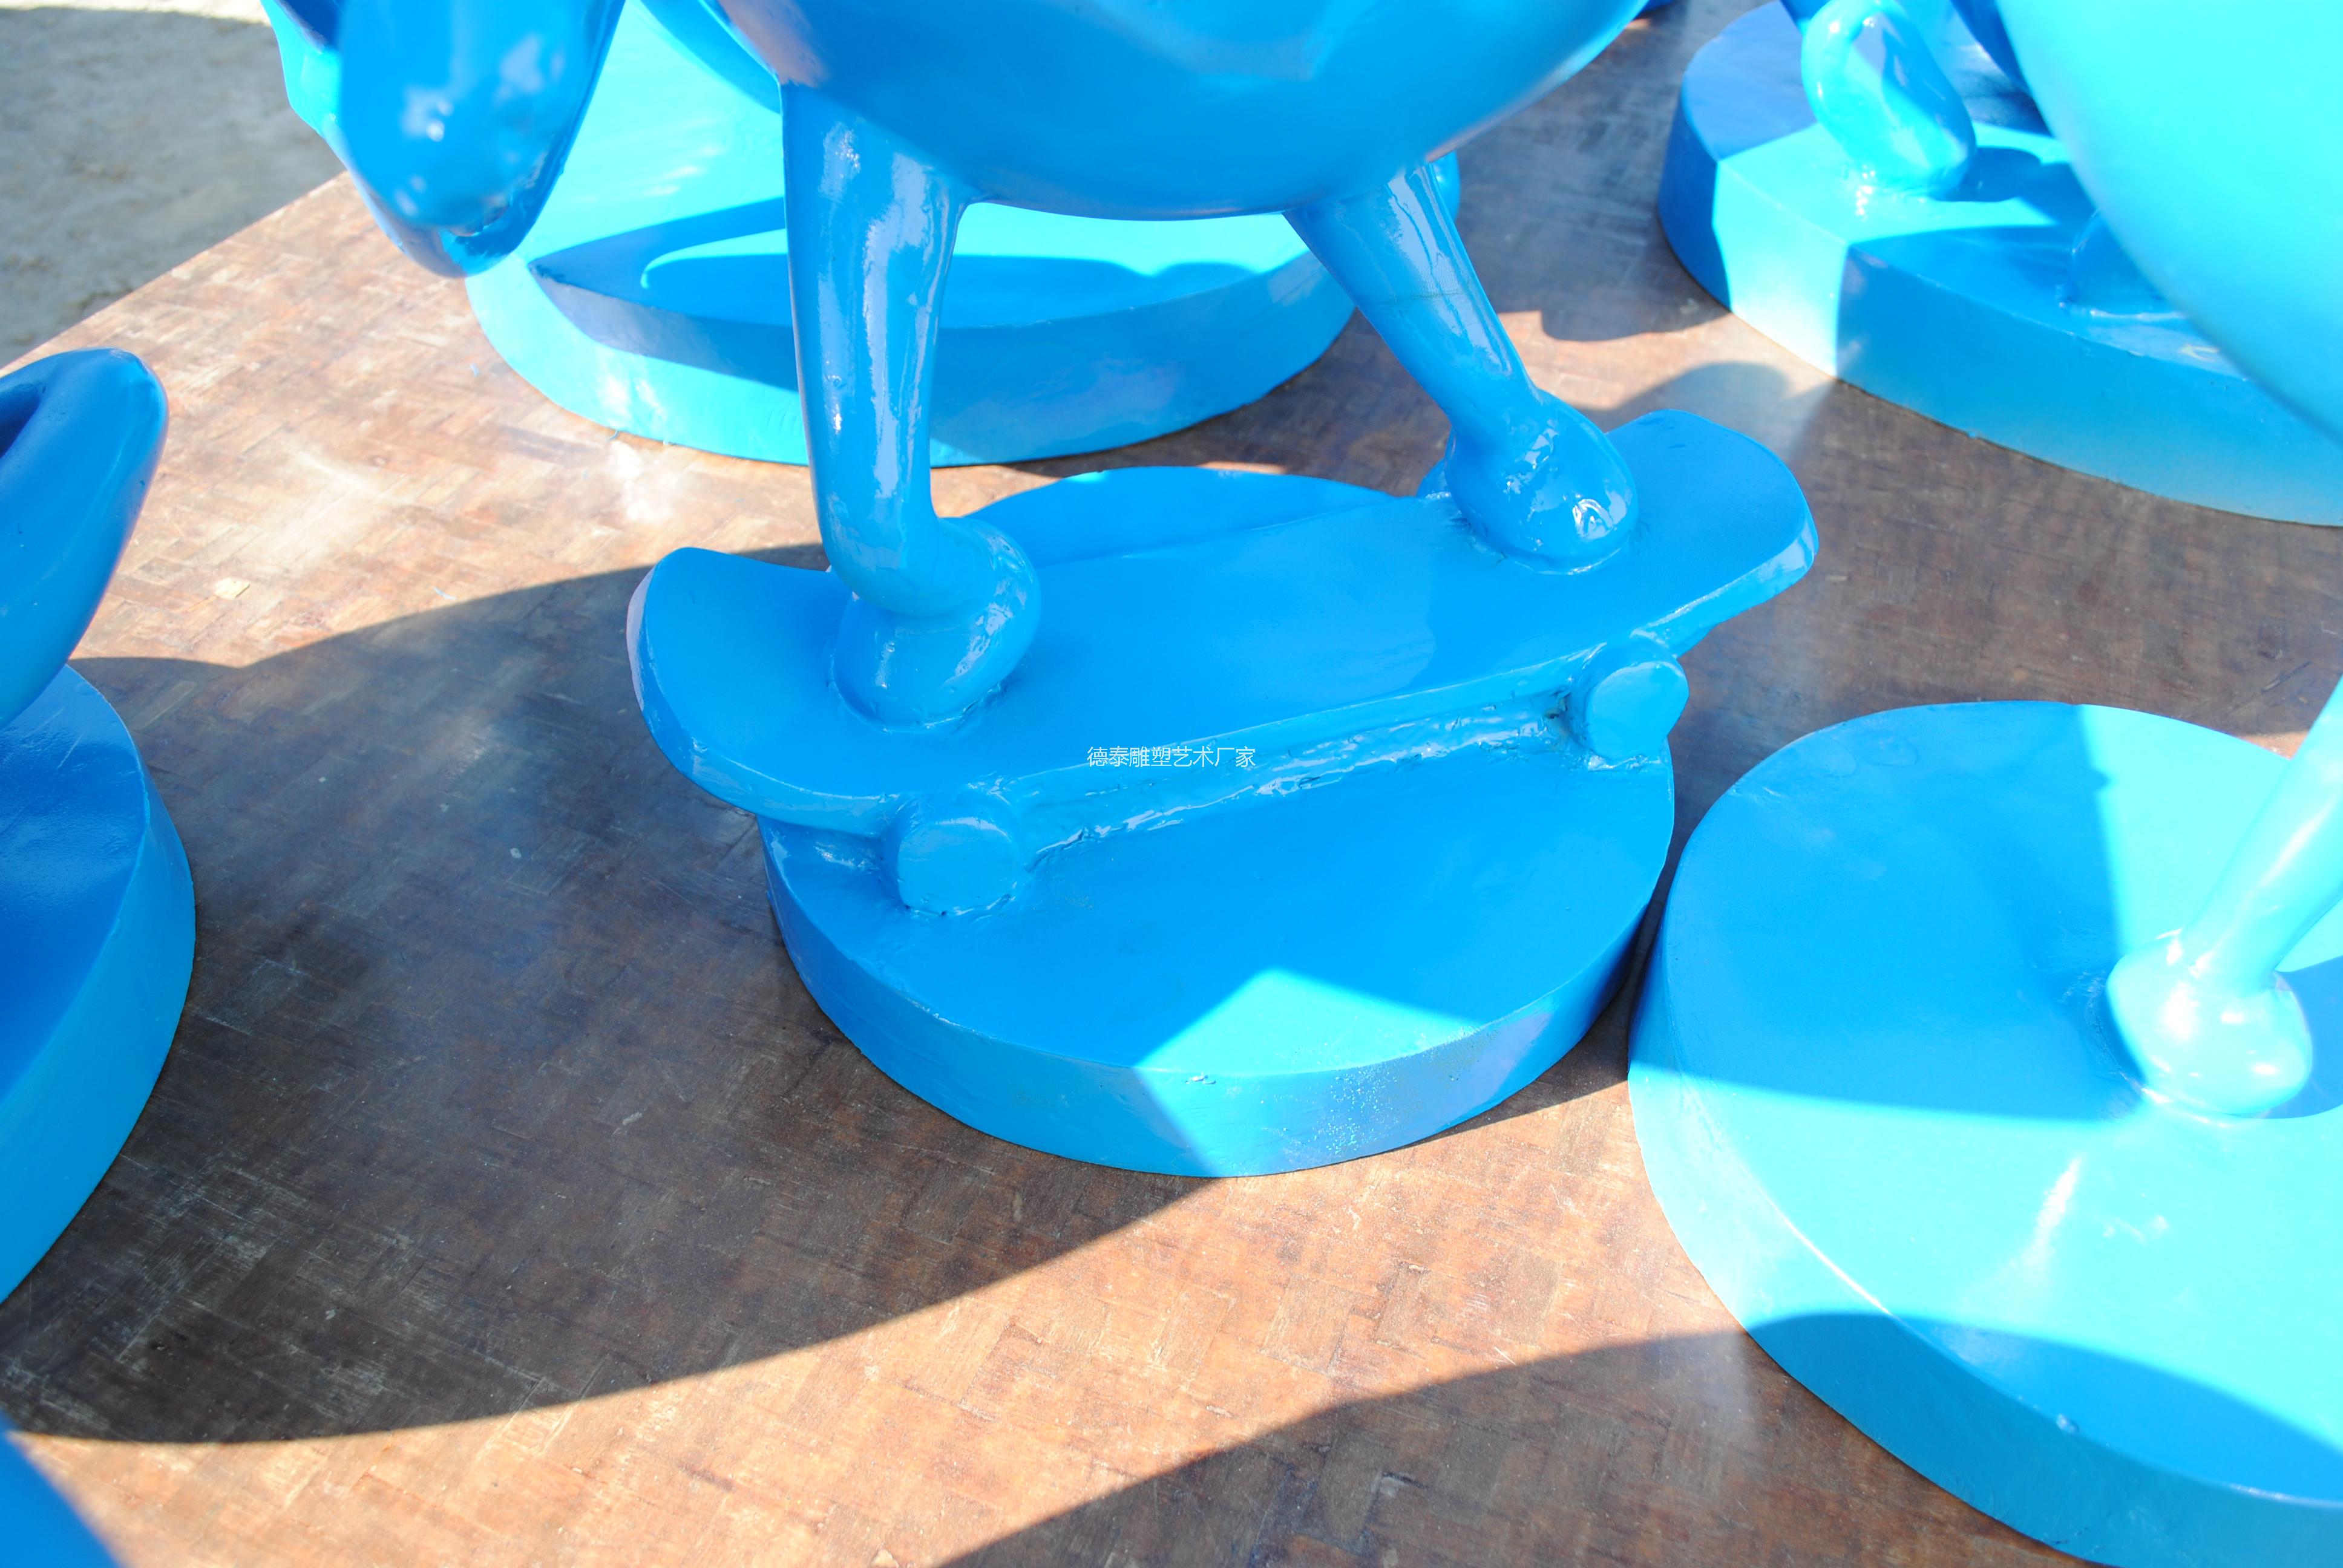 供应玻璃钢卡通经典人物造型雕塑模具模型供应厂商玻璃钢史瑞克经典造型